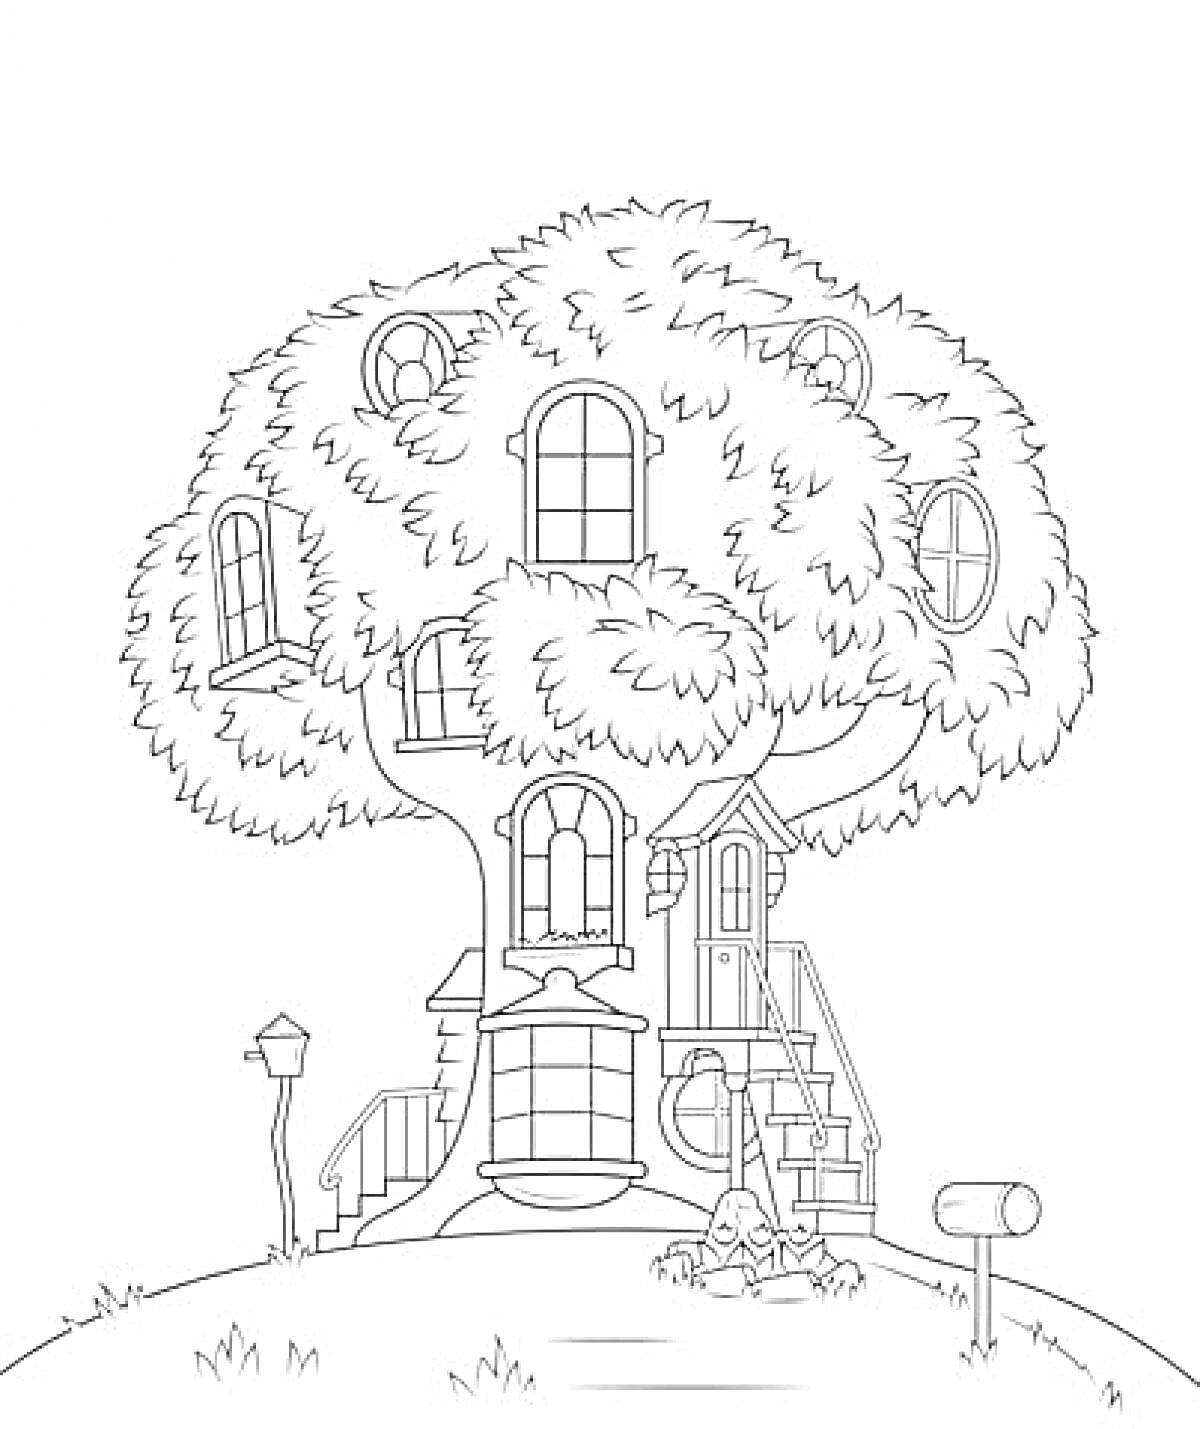 Домик на дереве с окнами, двери, лестницы, почтовый ящик и уличный фонарь